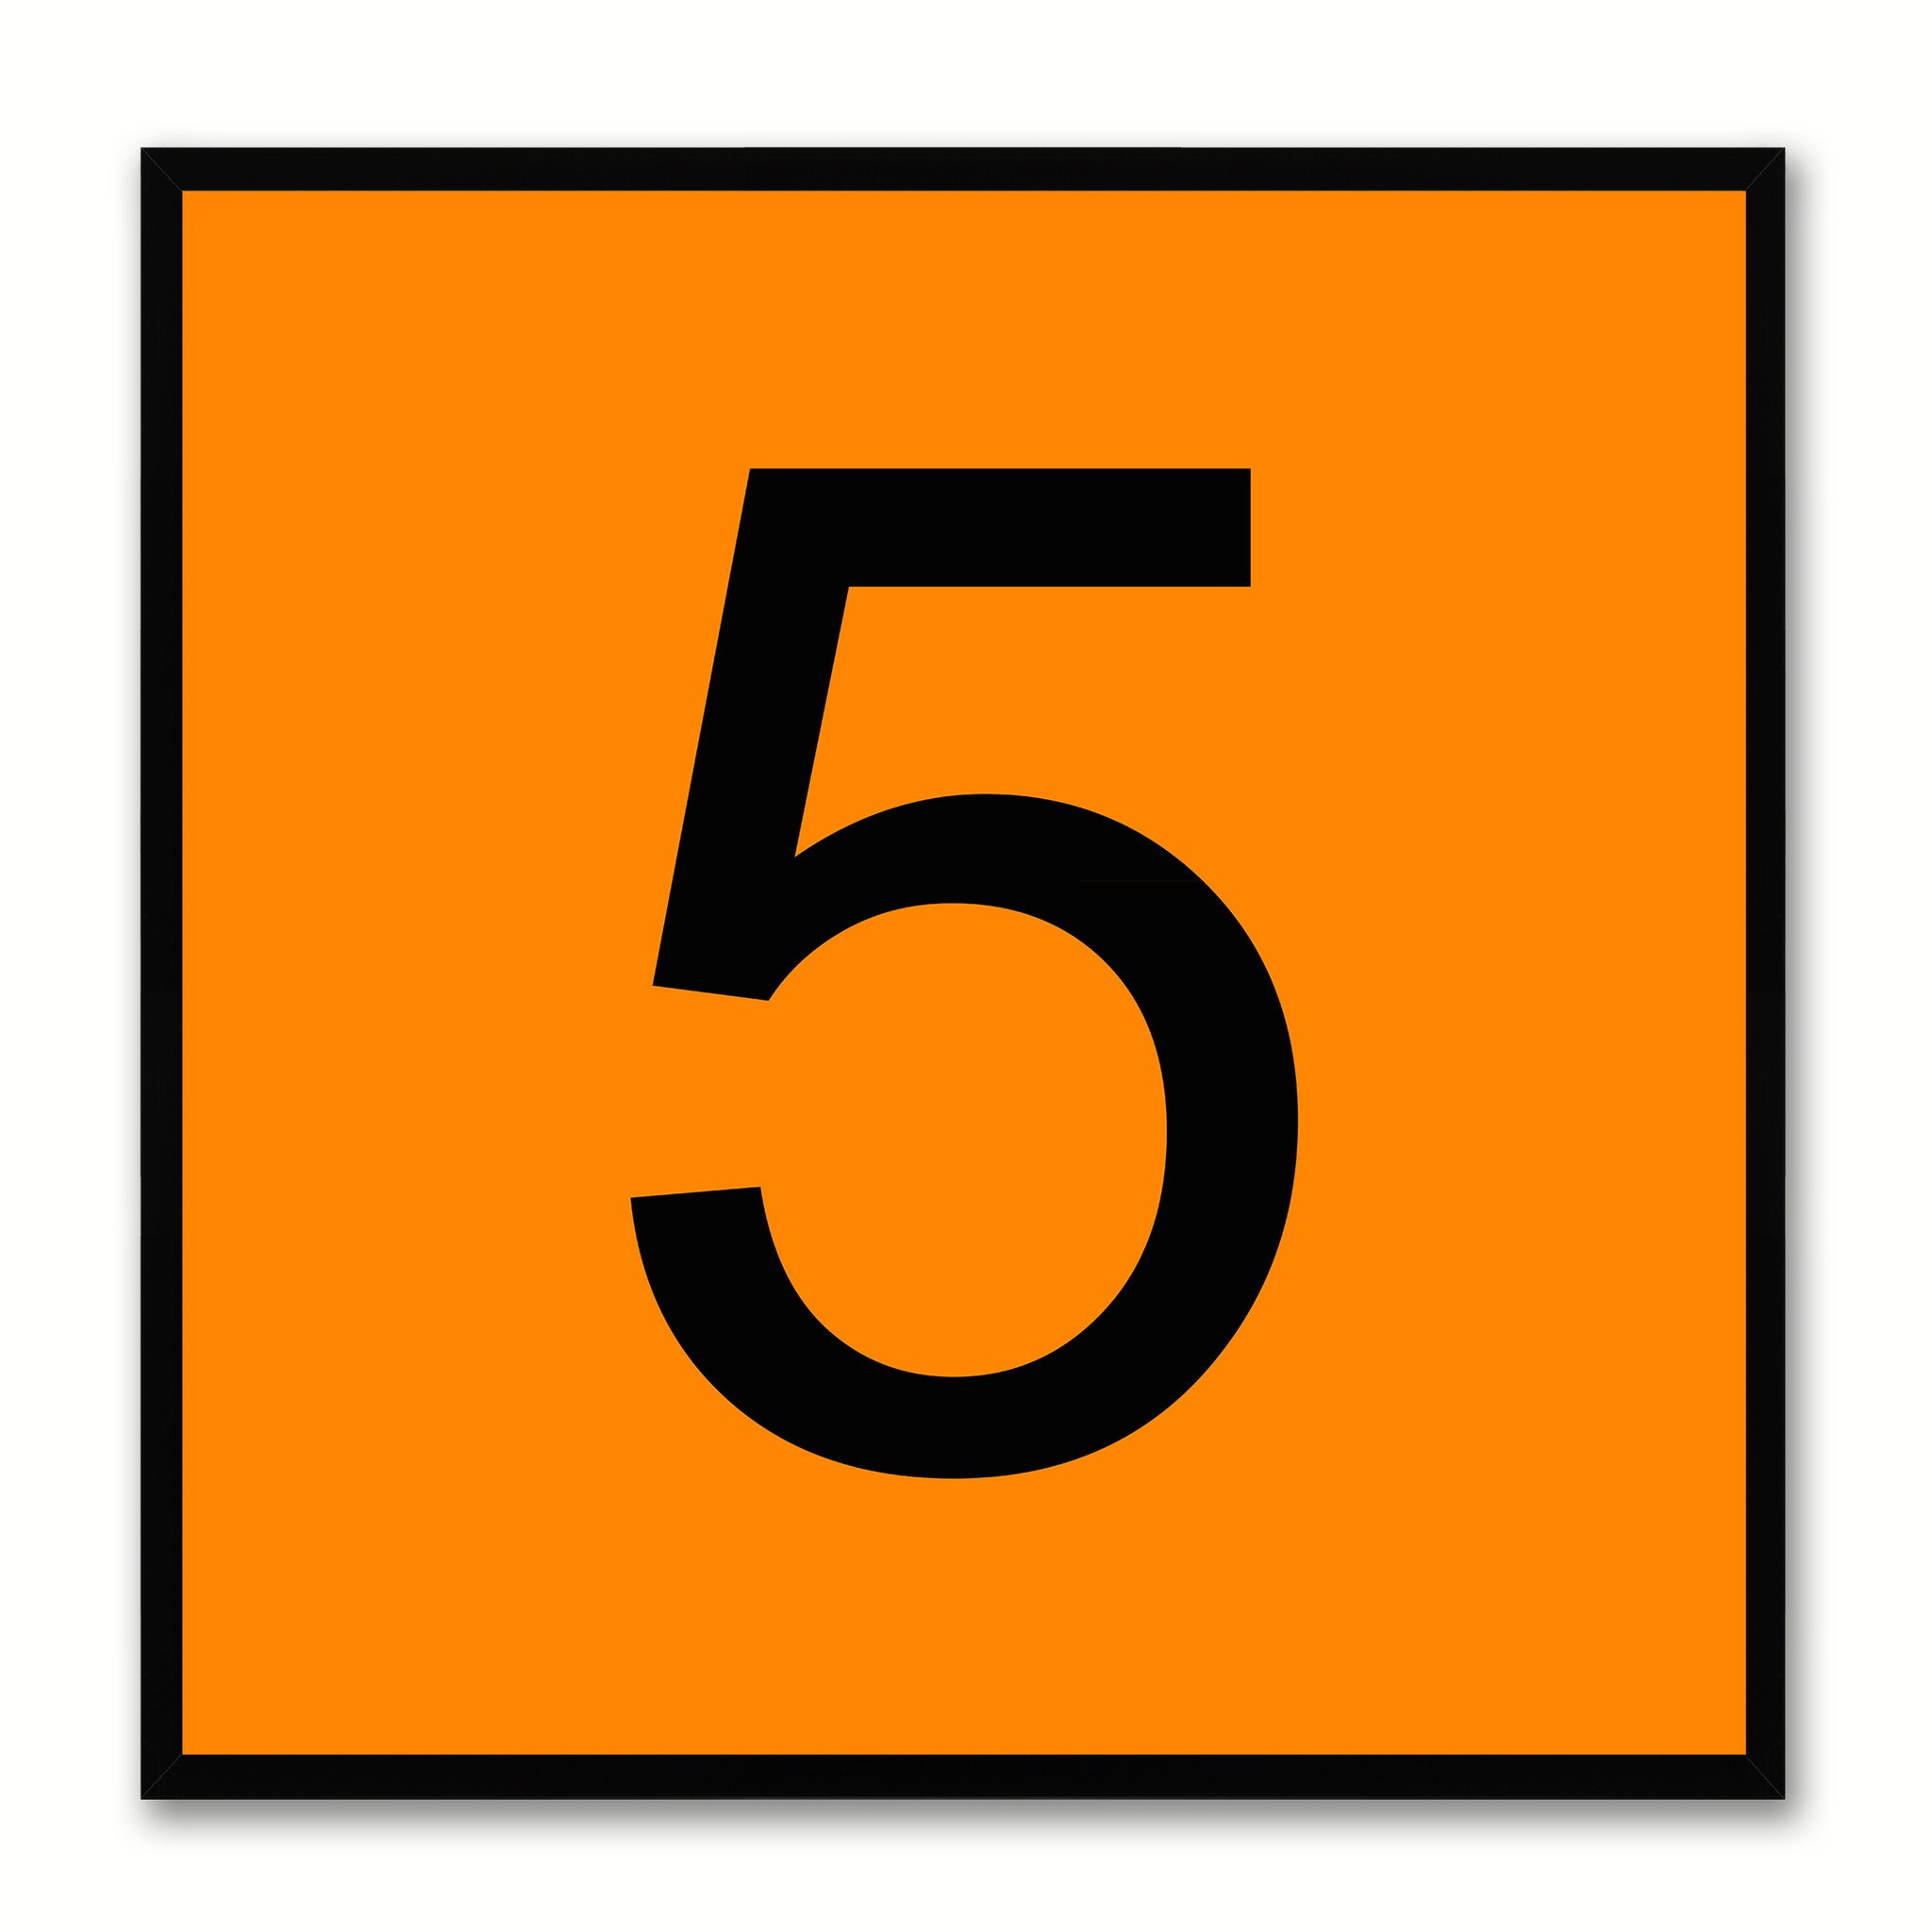 5 clipart orange number